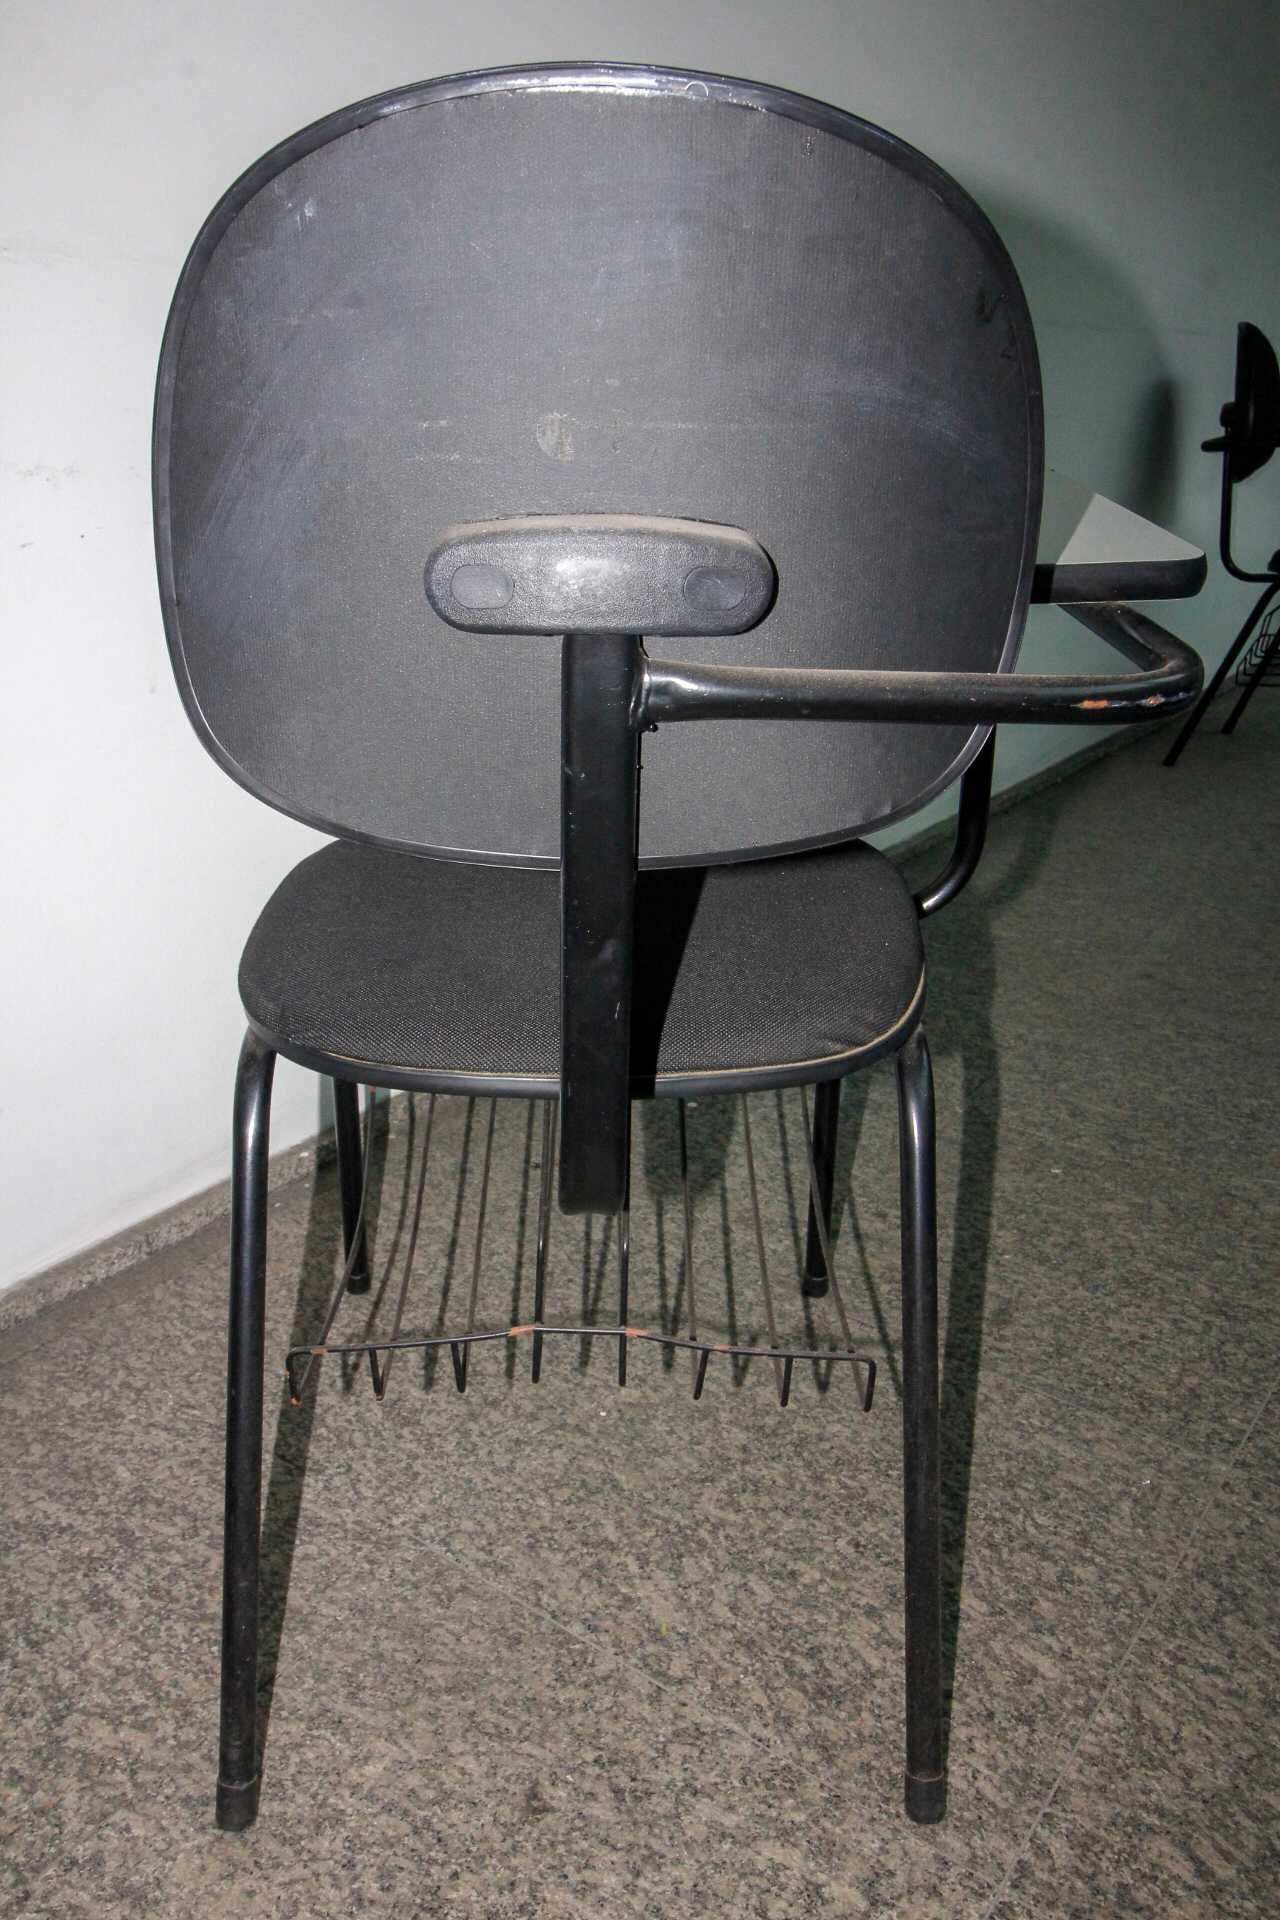 Cadeira Escolar / Universitária Preta 83 cm x 50 cm x 65 cm